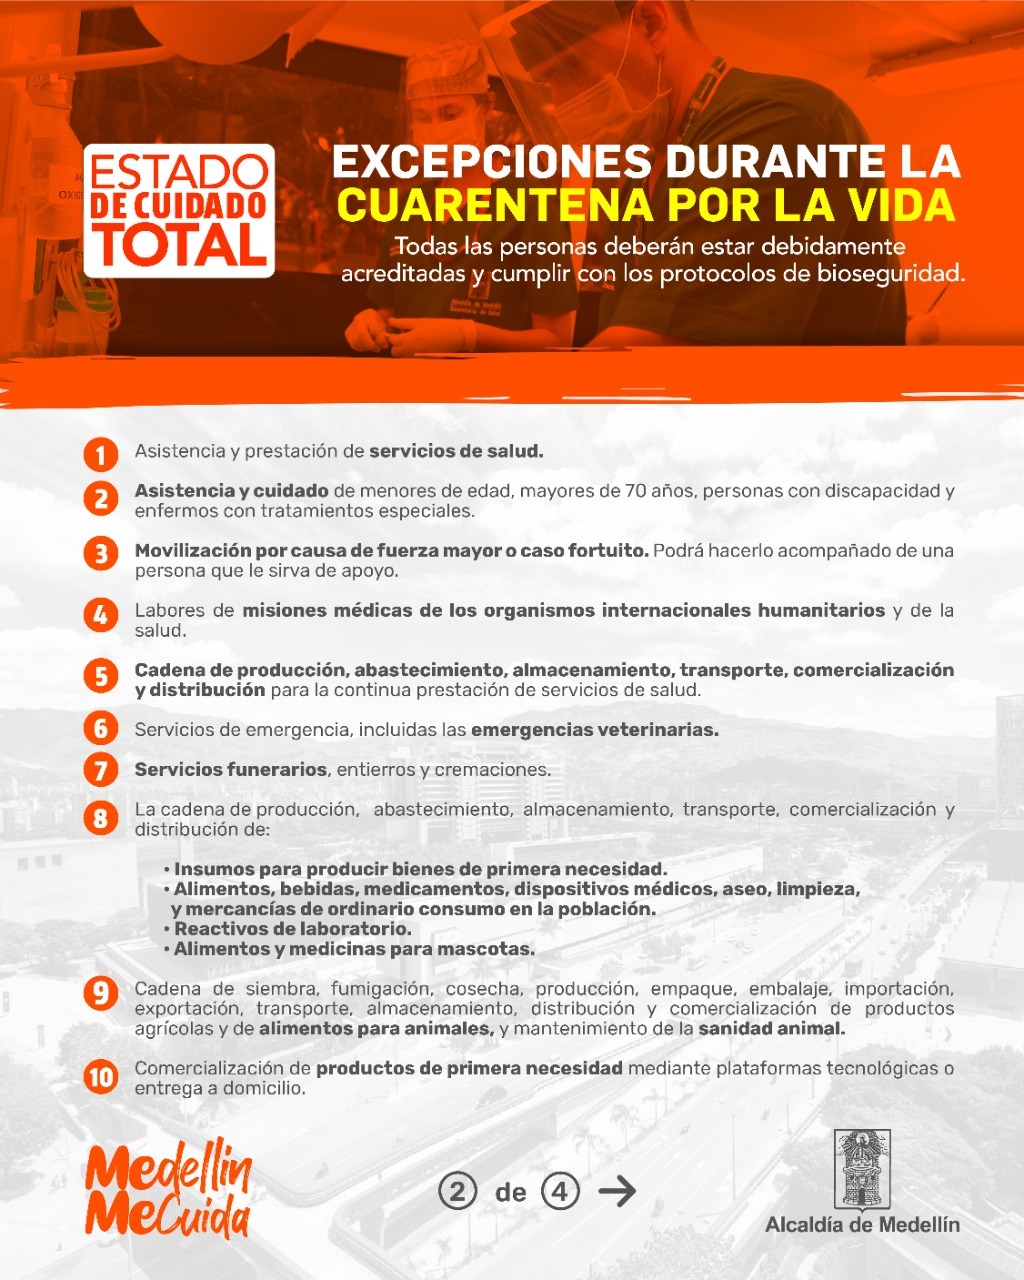 Excepciones para poder circular por Medellín y el Valle del Aburrá en cuarentena